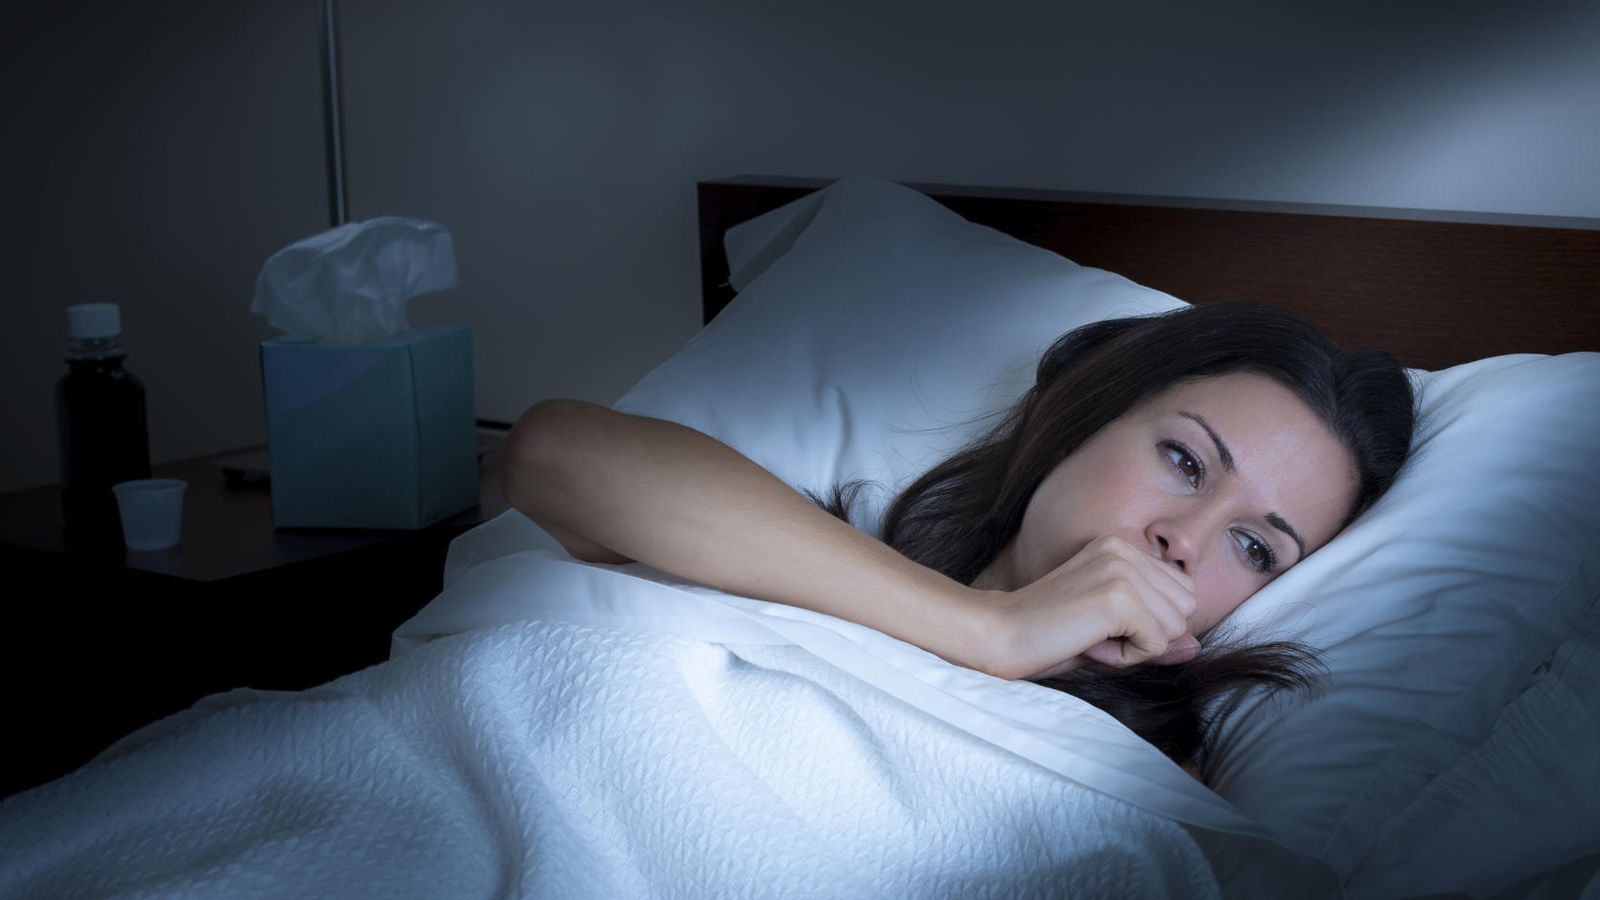 Tos nocturna: causas y remedios caseros que alivian